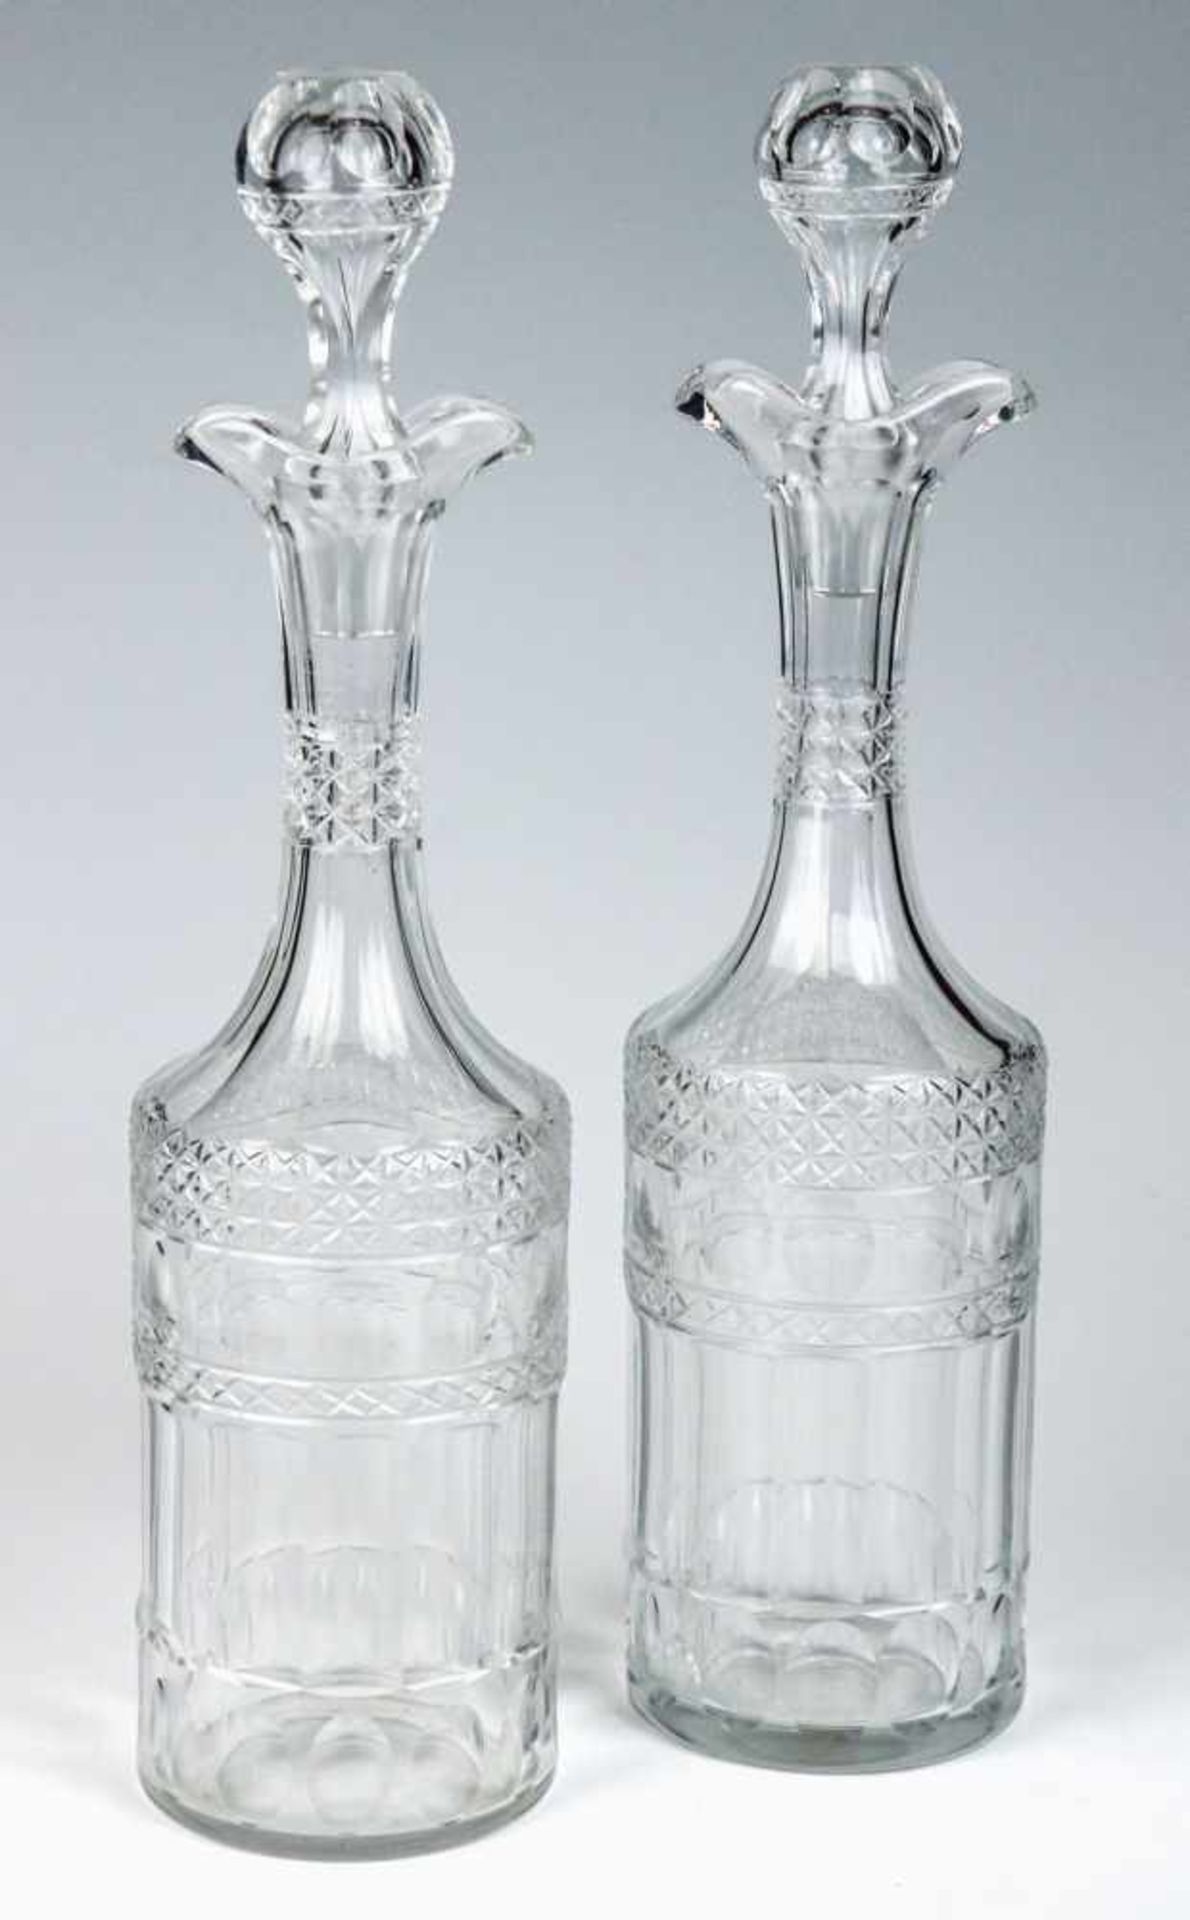 Ein Paar Karaffen mit Stöpsel19. Jh.Kristallglas mit Schliff. Zylindrischer Korpus mit